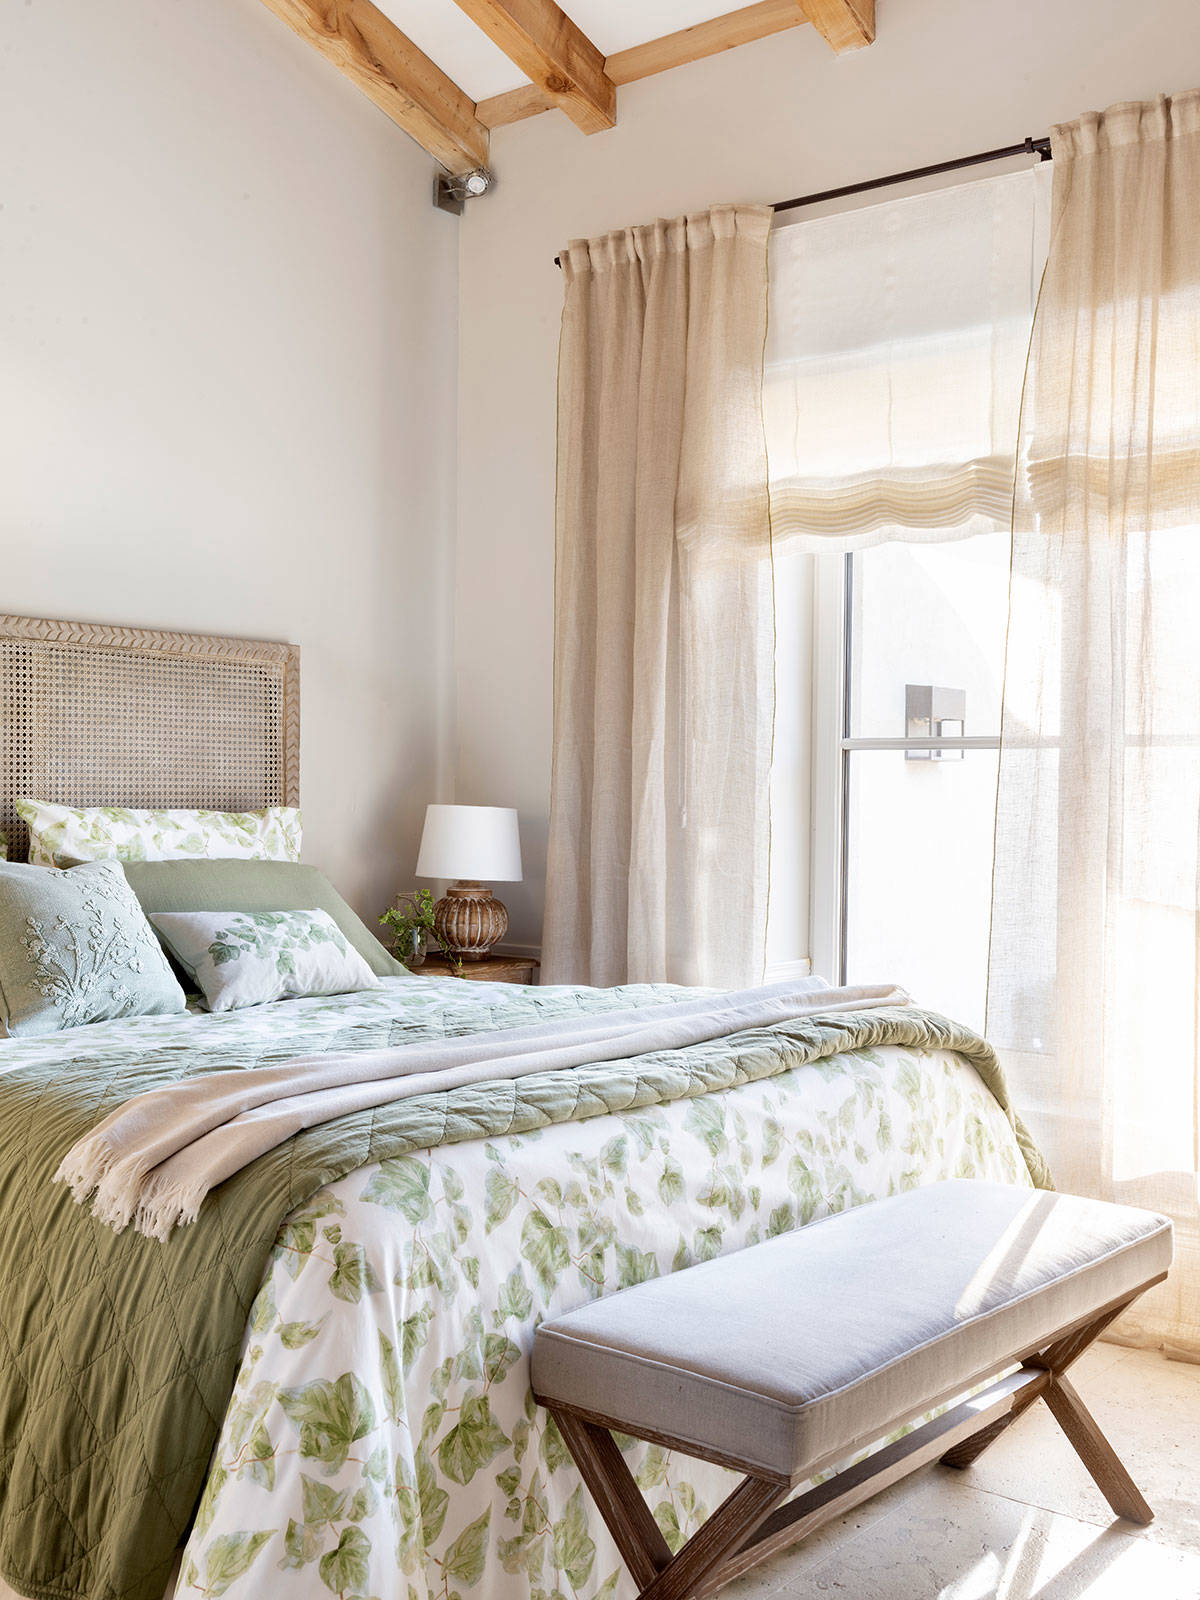 Dormitorio vestido con telas verdes lisas y estampadas.